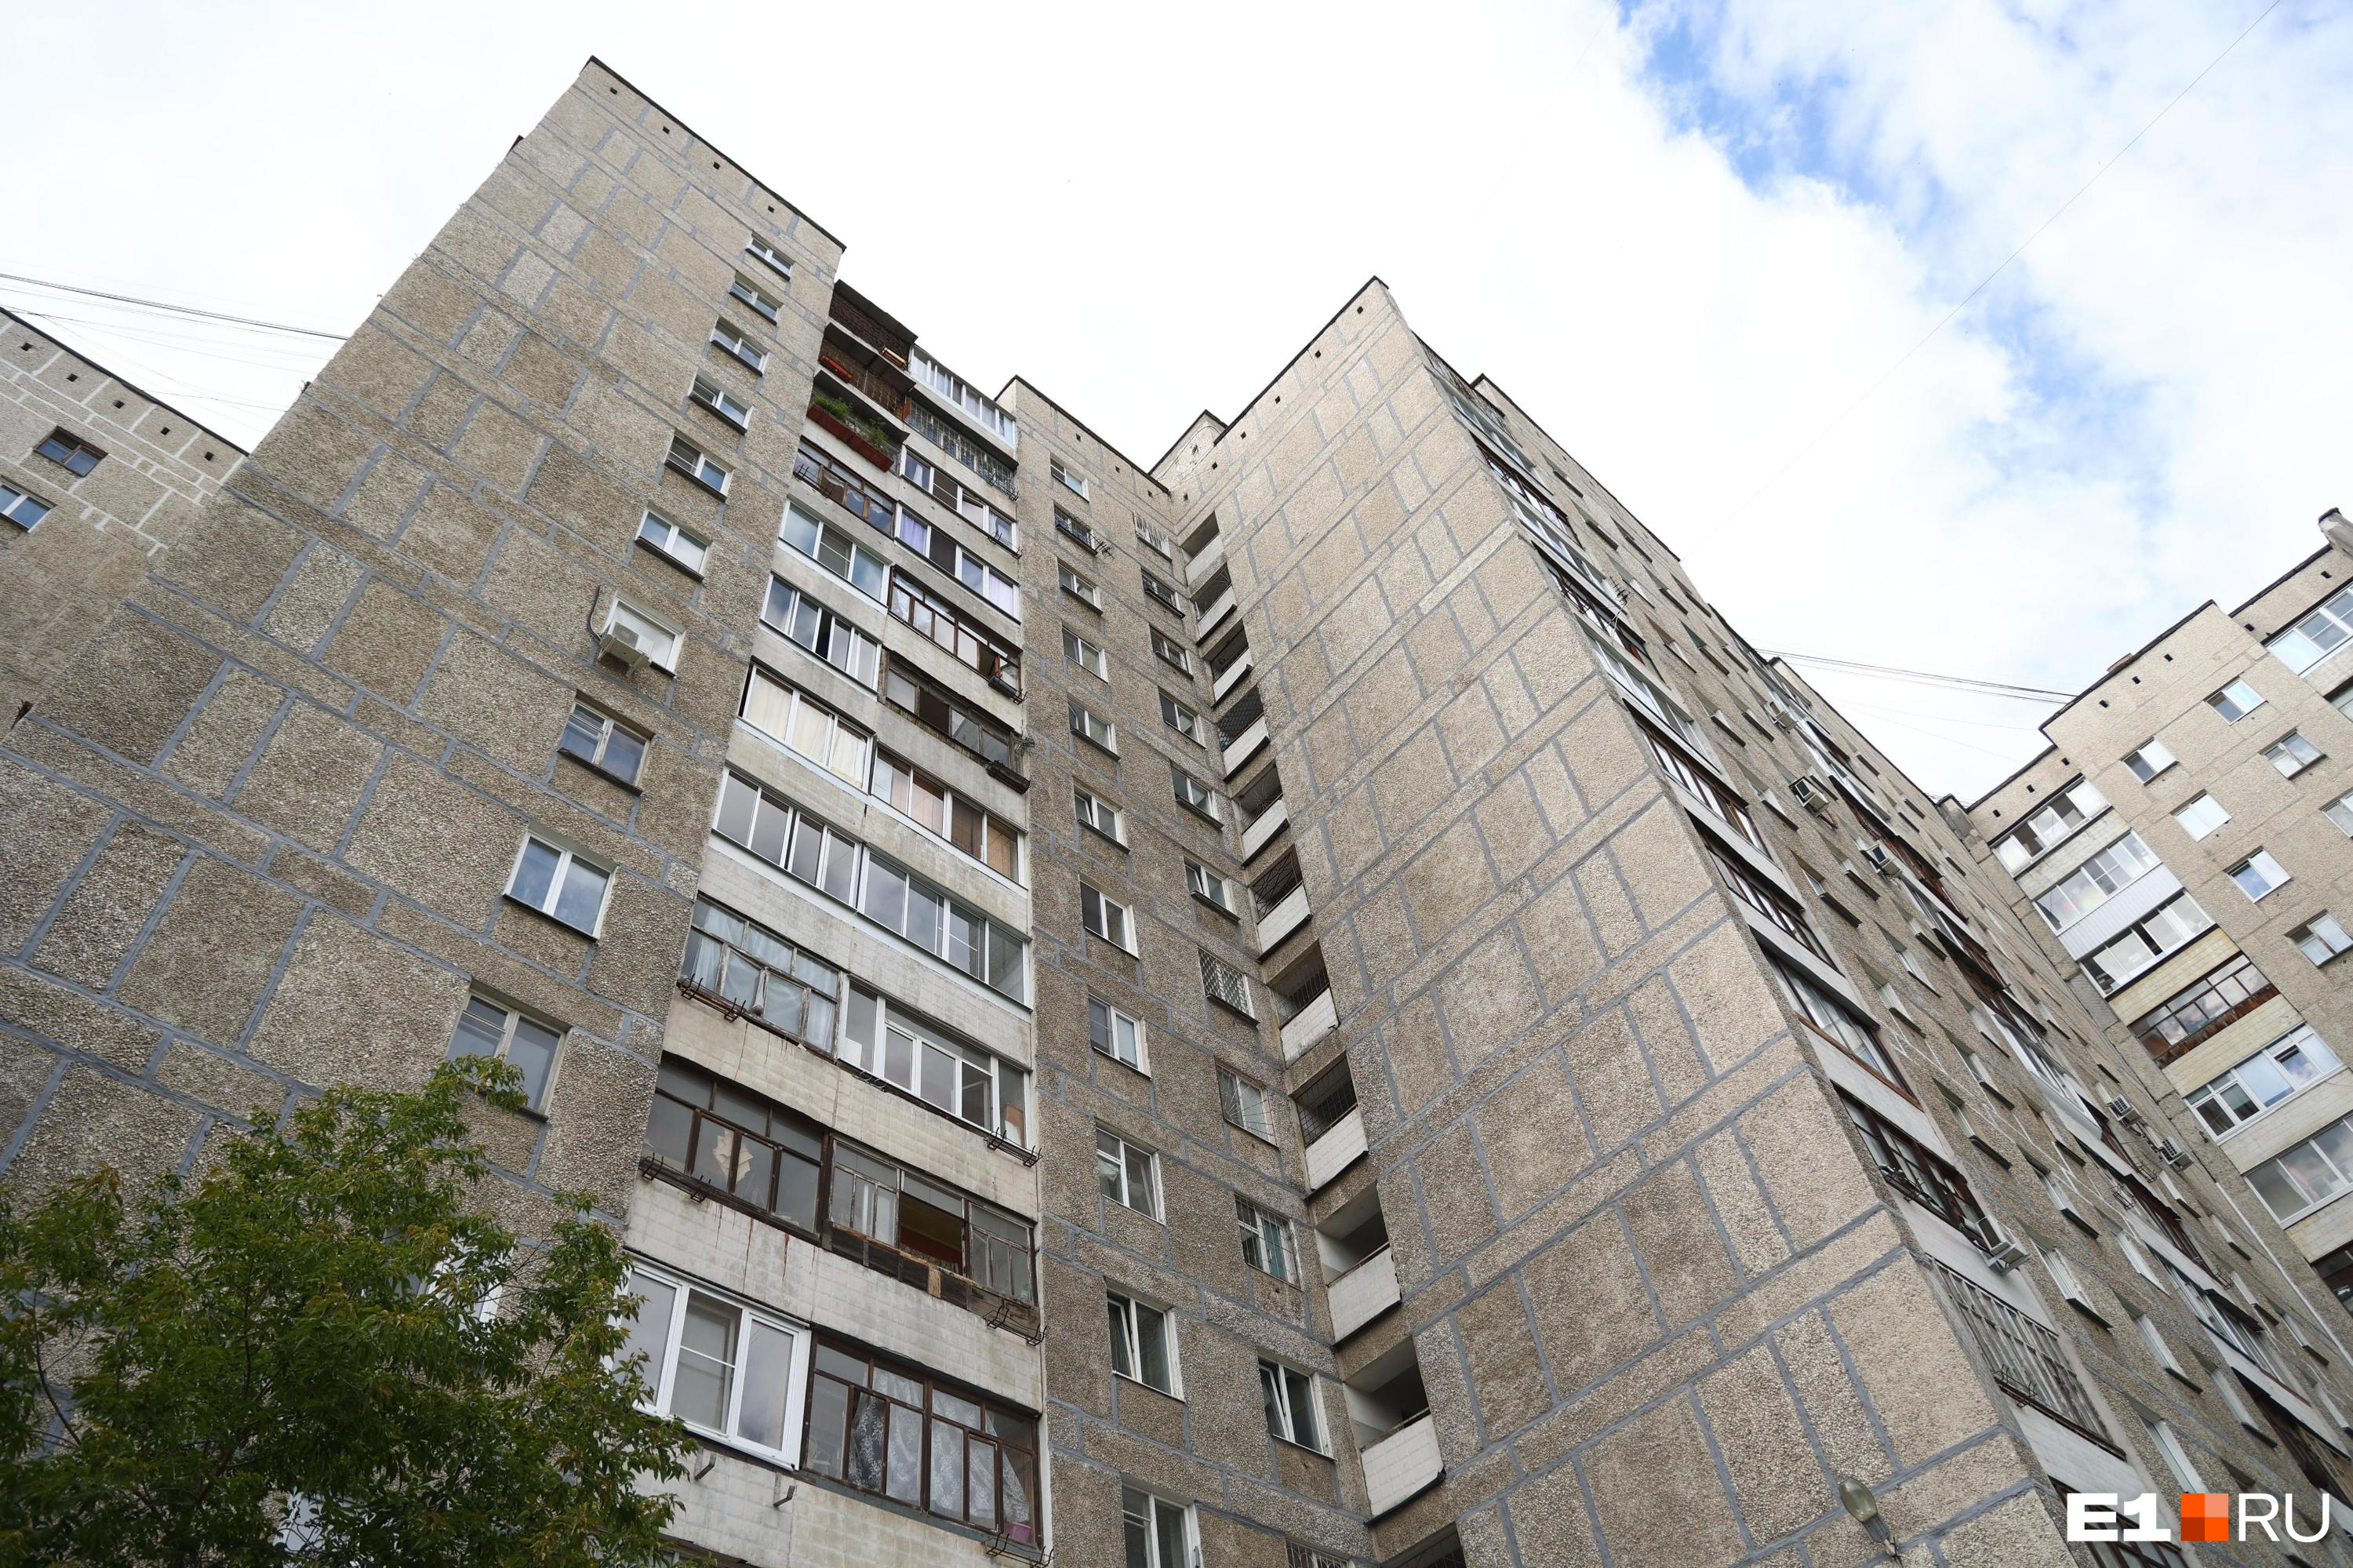 В Екатеринбурге дешевеют квартиры на вторичке. Почему этого никто не замечает?